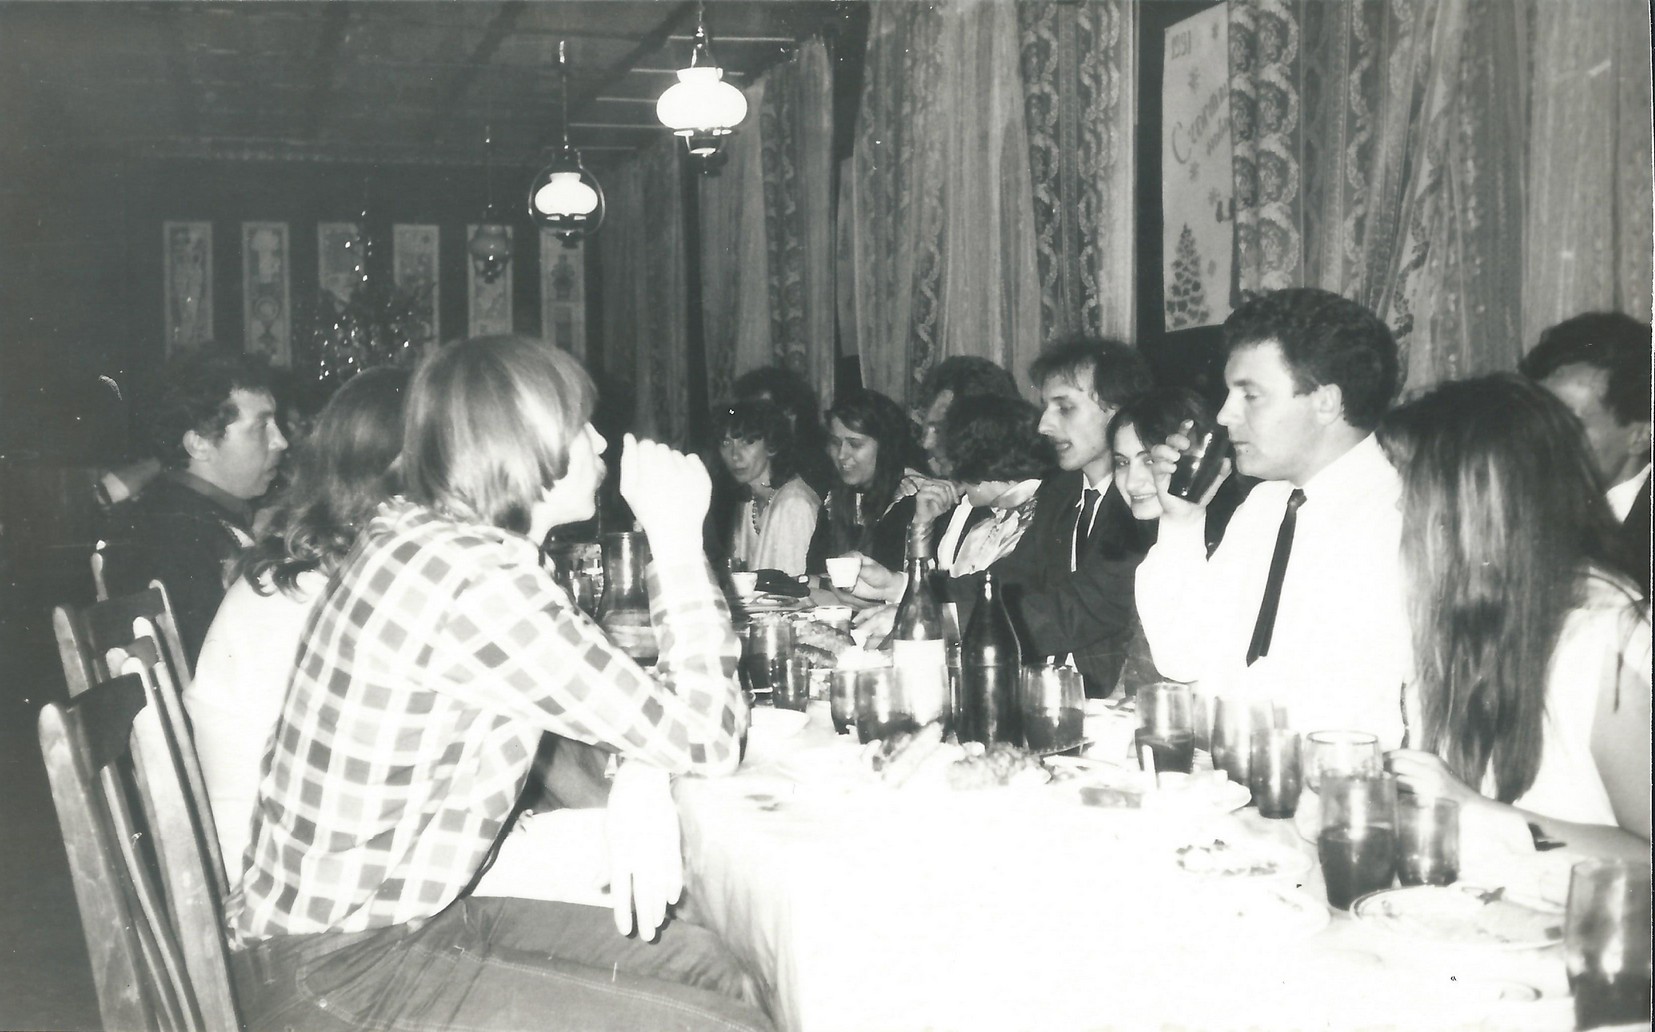 Za stołem w sali bankietowej. Od prawej: Włodzimierz Pac, Dorota Kuźmicz (Sulżyk), Jerzy Sulżyk